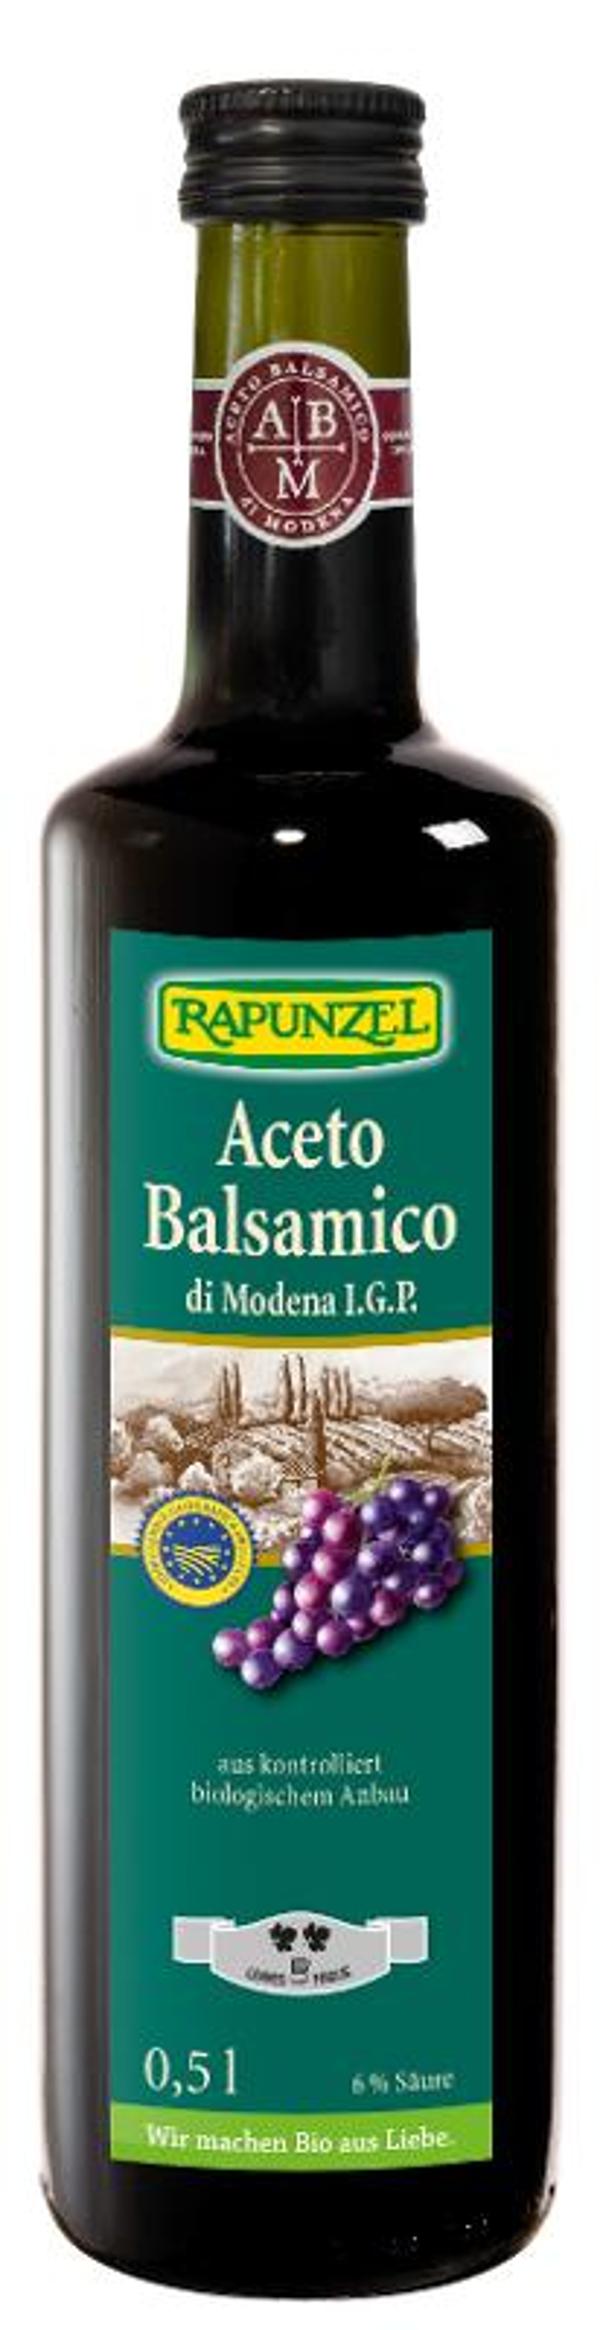 Produktfoto zu Balsamico di Modena Rustico 500ml